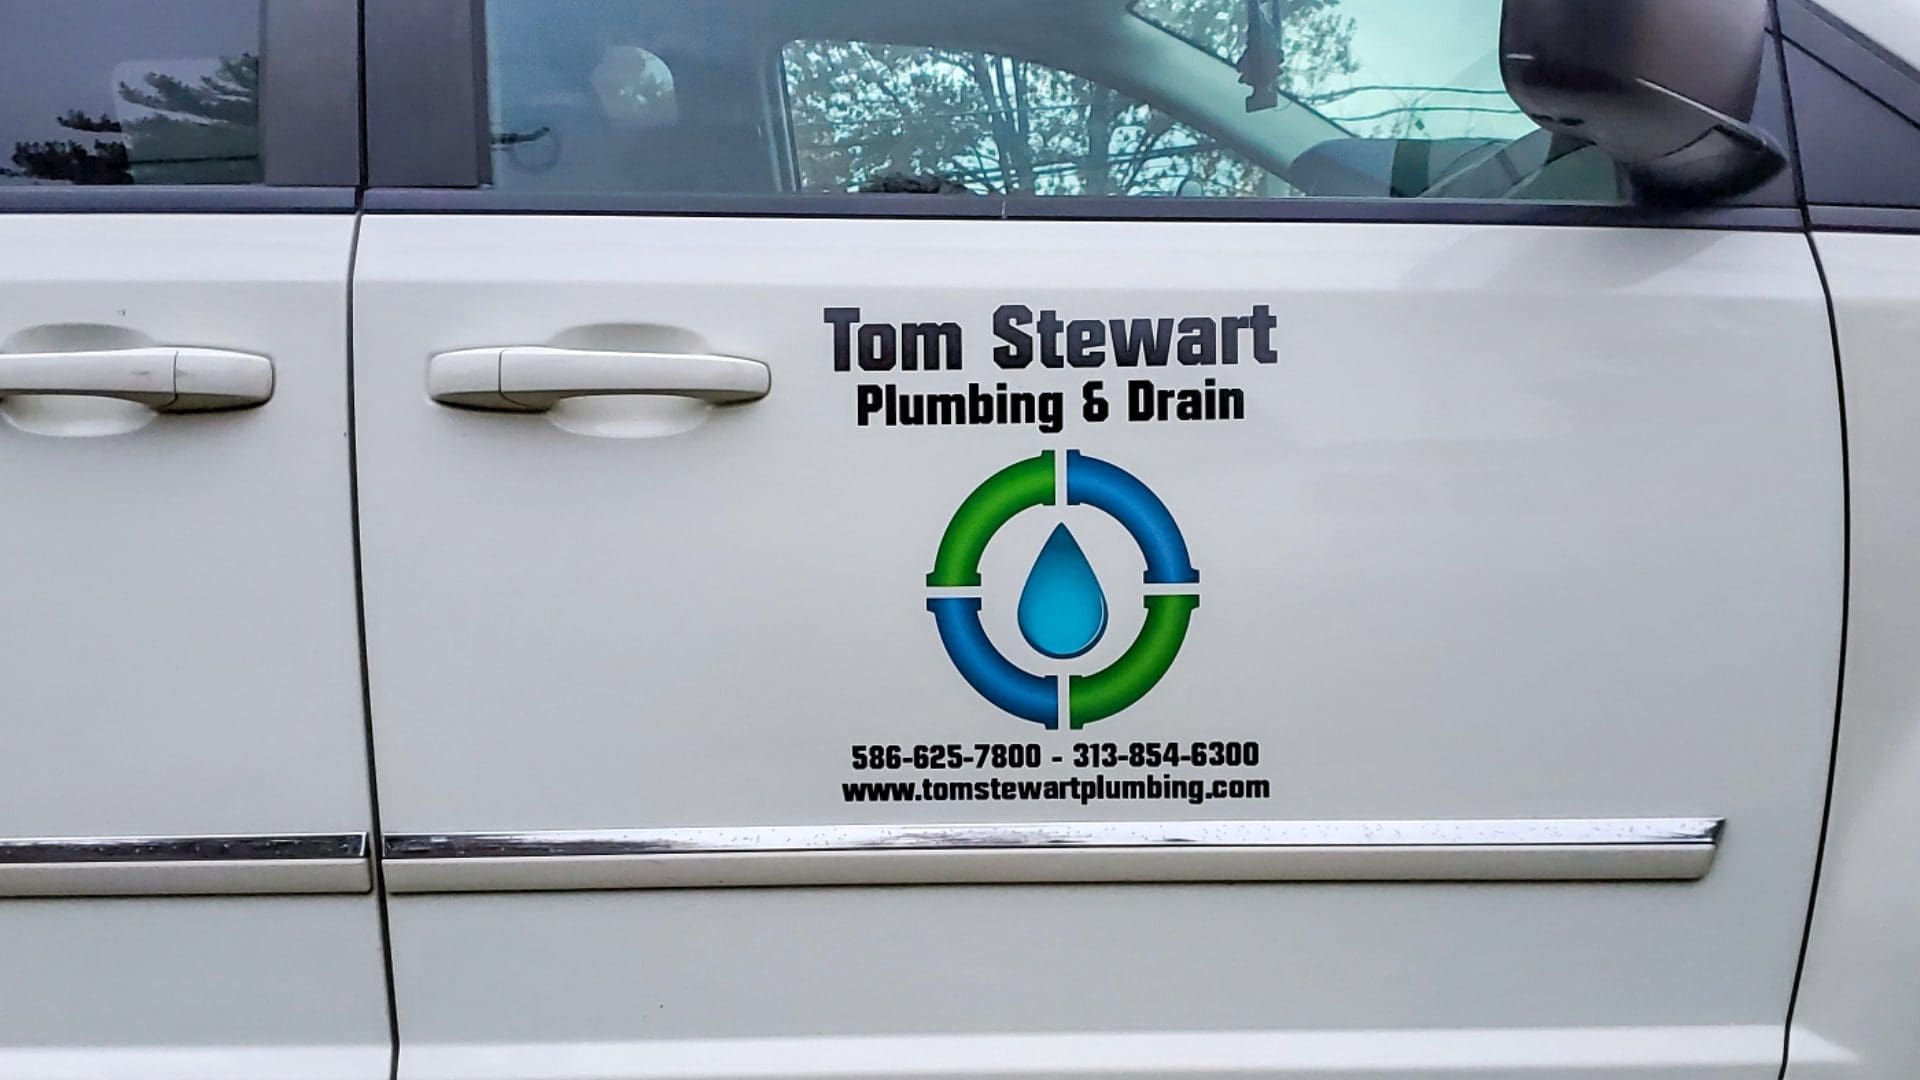 Tom Stewart Plumbing Van Fleet Graphics (3)